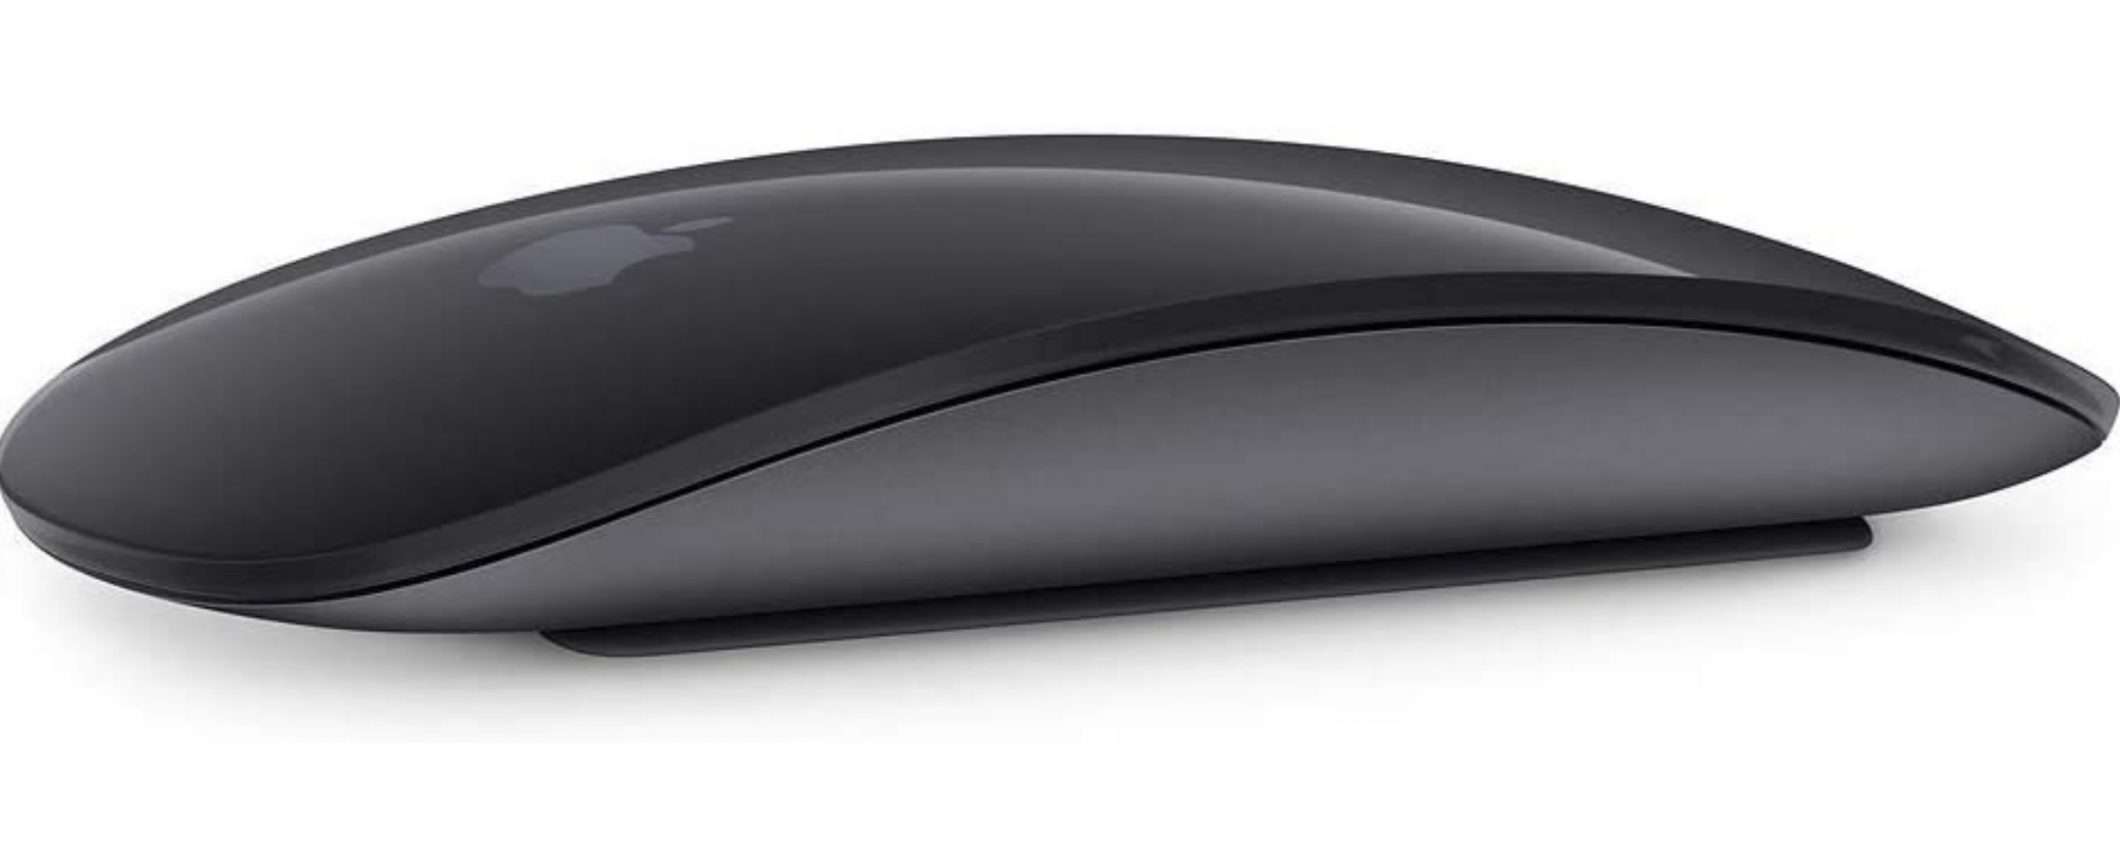 Apple Magic Mouse 2: prezzo incredibile per il Black Friday!